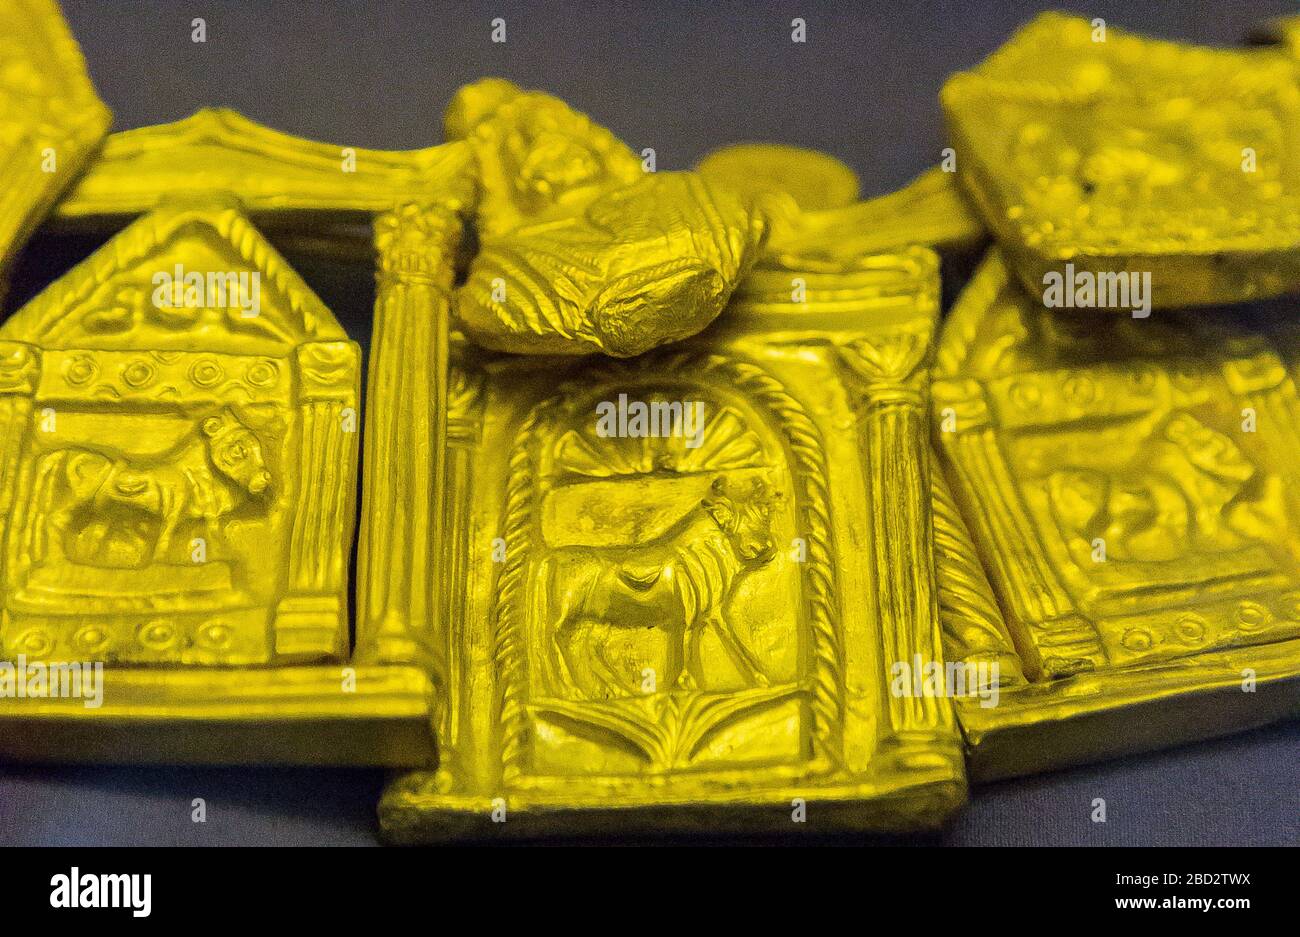 Egitto, Cairo, Museo Egizio, collare romano appartenente al tesoro di Dush, trovato in una cache nel tempio di Dush. Il collare è realizzato con amuleti in oro. Foto Stock